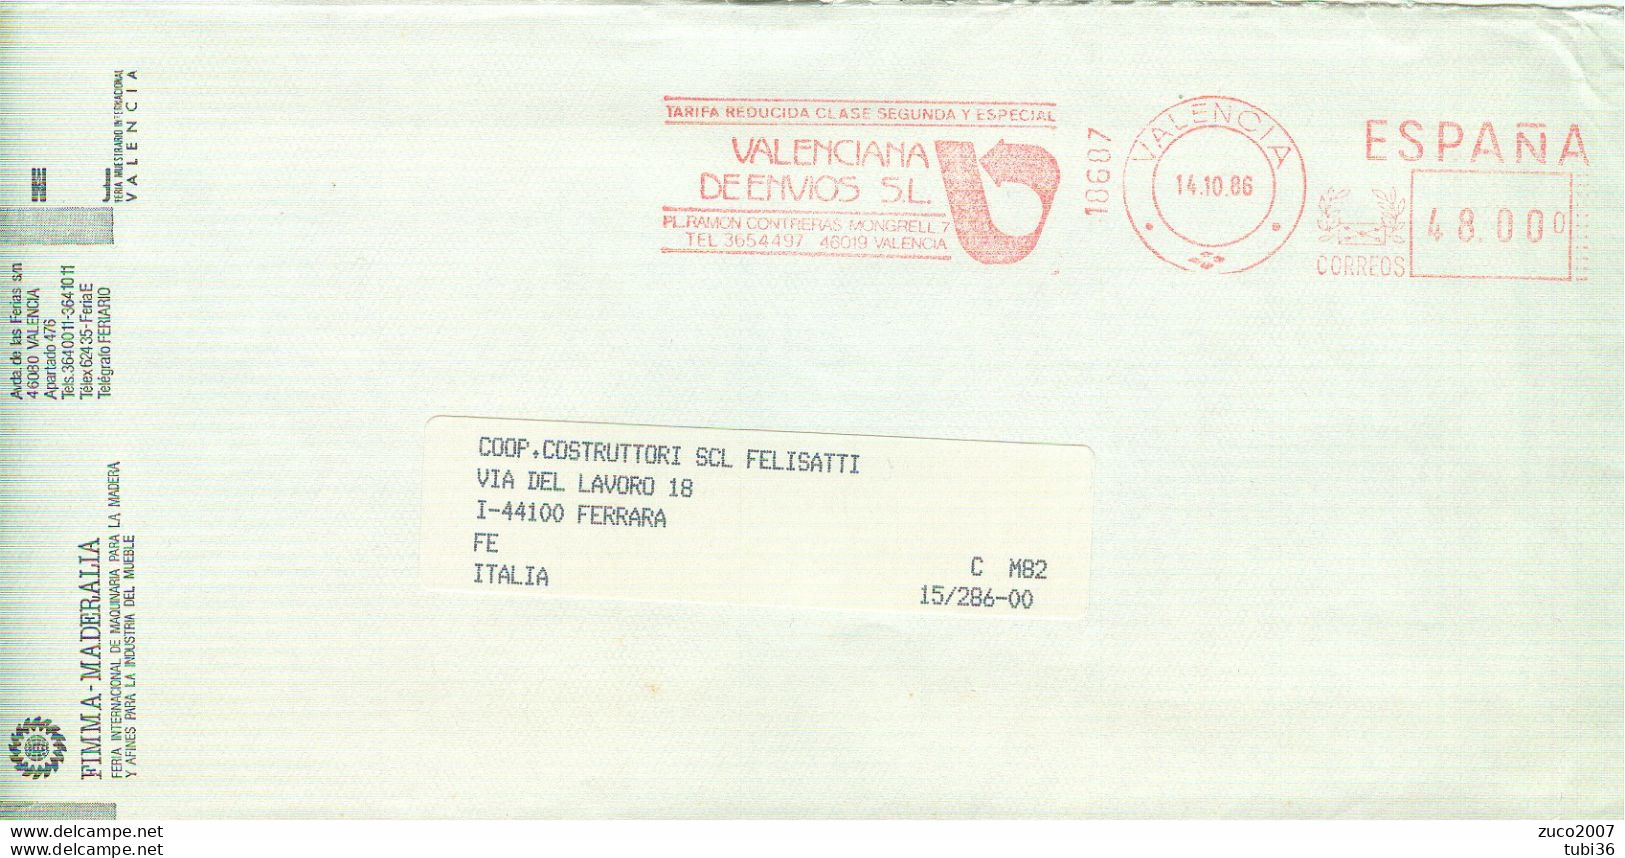 SPAGNA - ESPANA - VALENCIA - 1986 - FERRARA - ITALIA - Machines à Affranchir (EMA)